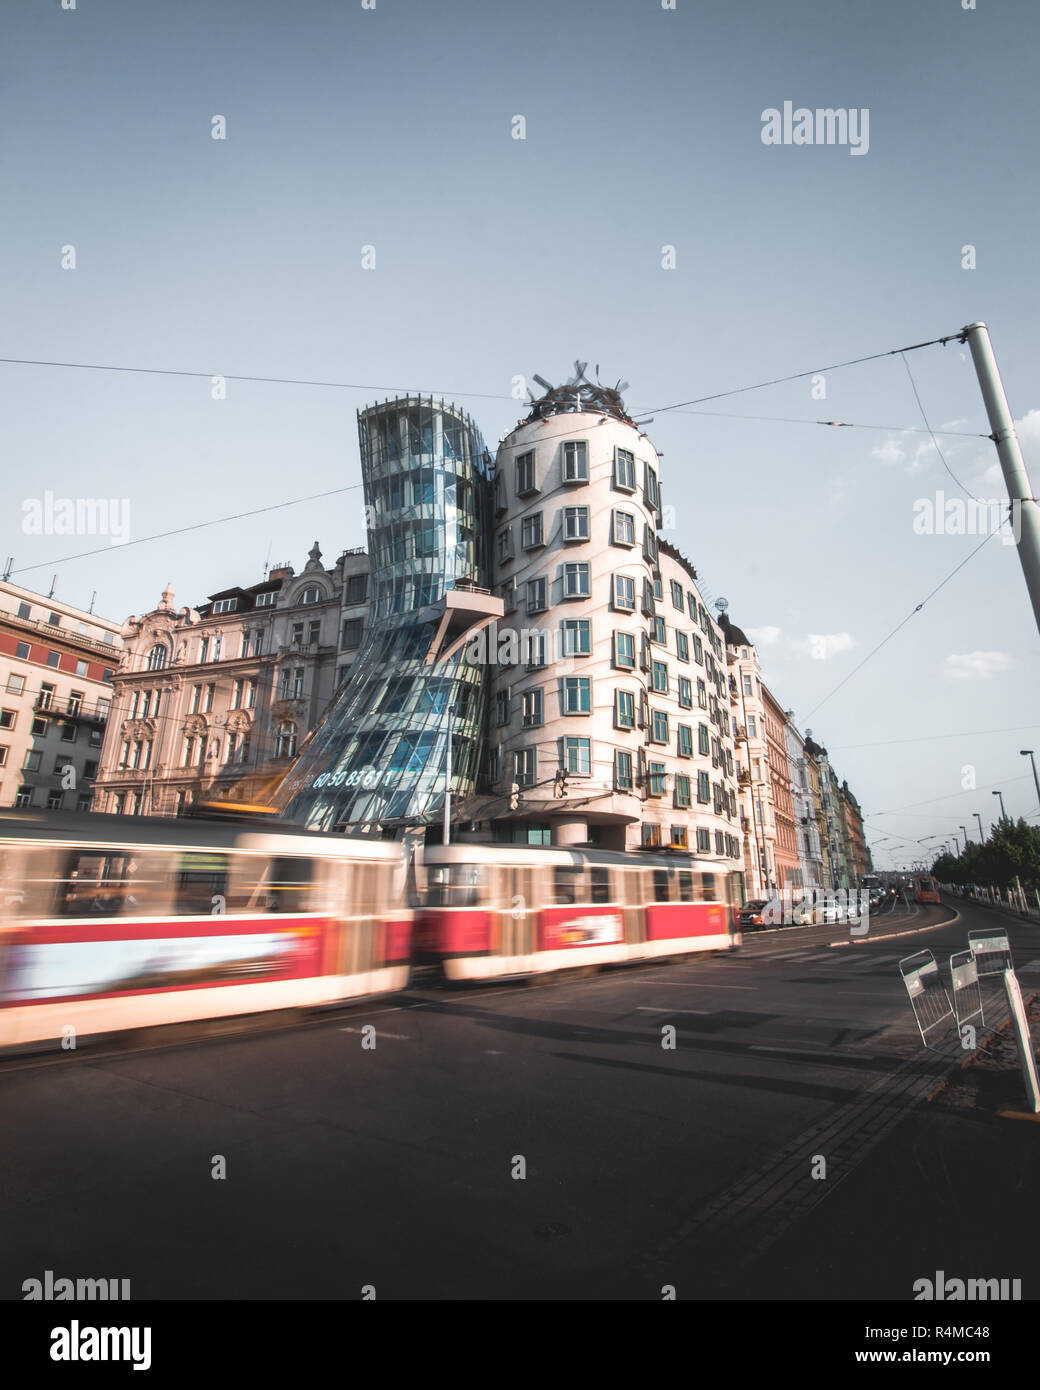 Uno de los edificios más emblemáticos de Praga junto a onu tranvía en movimiento. Foto Stock